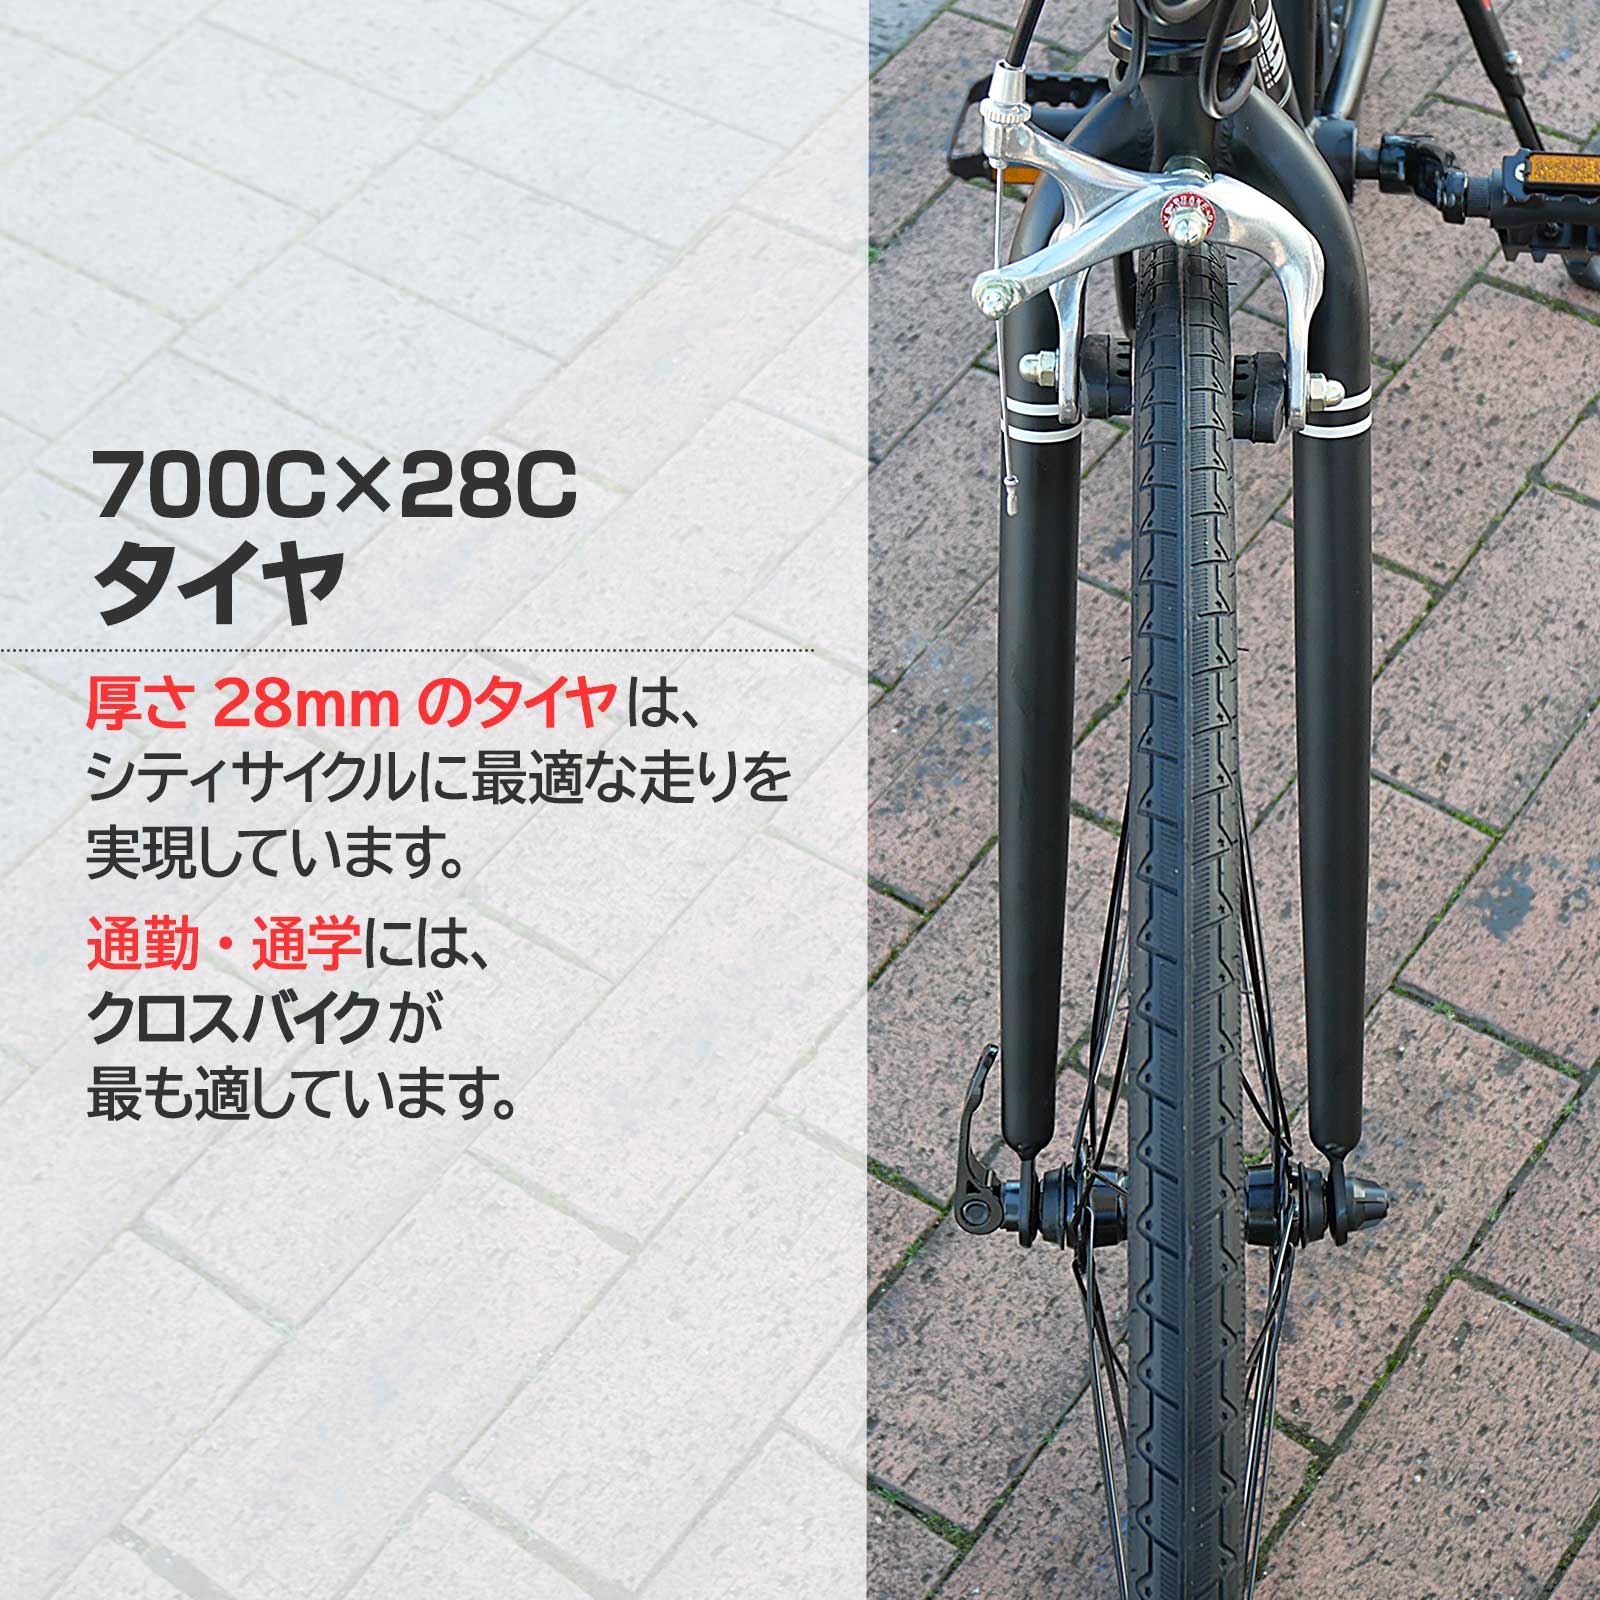 クロスバイク 700c シマノ製 21段変速 ライト スタンド付 自転車 通勤 